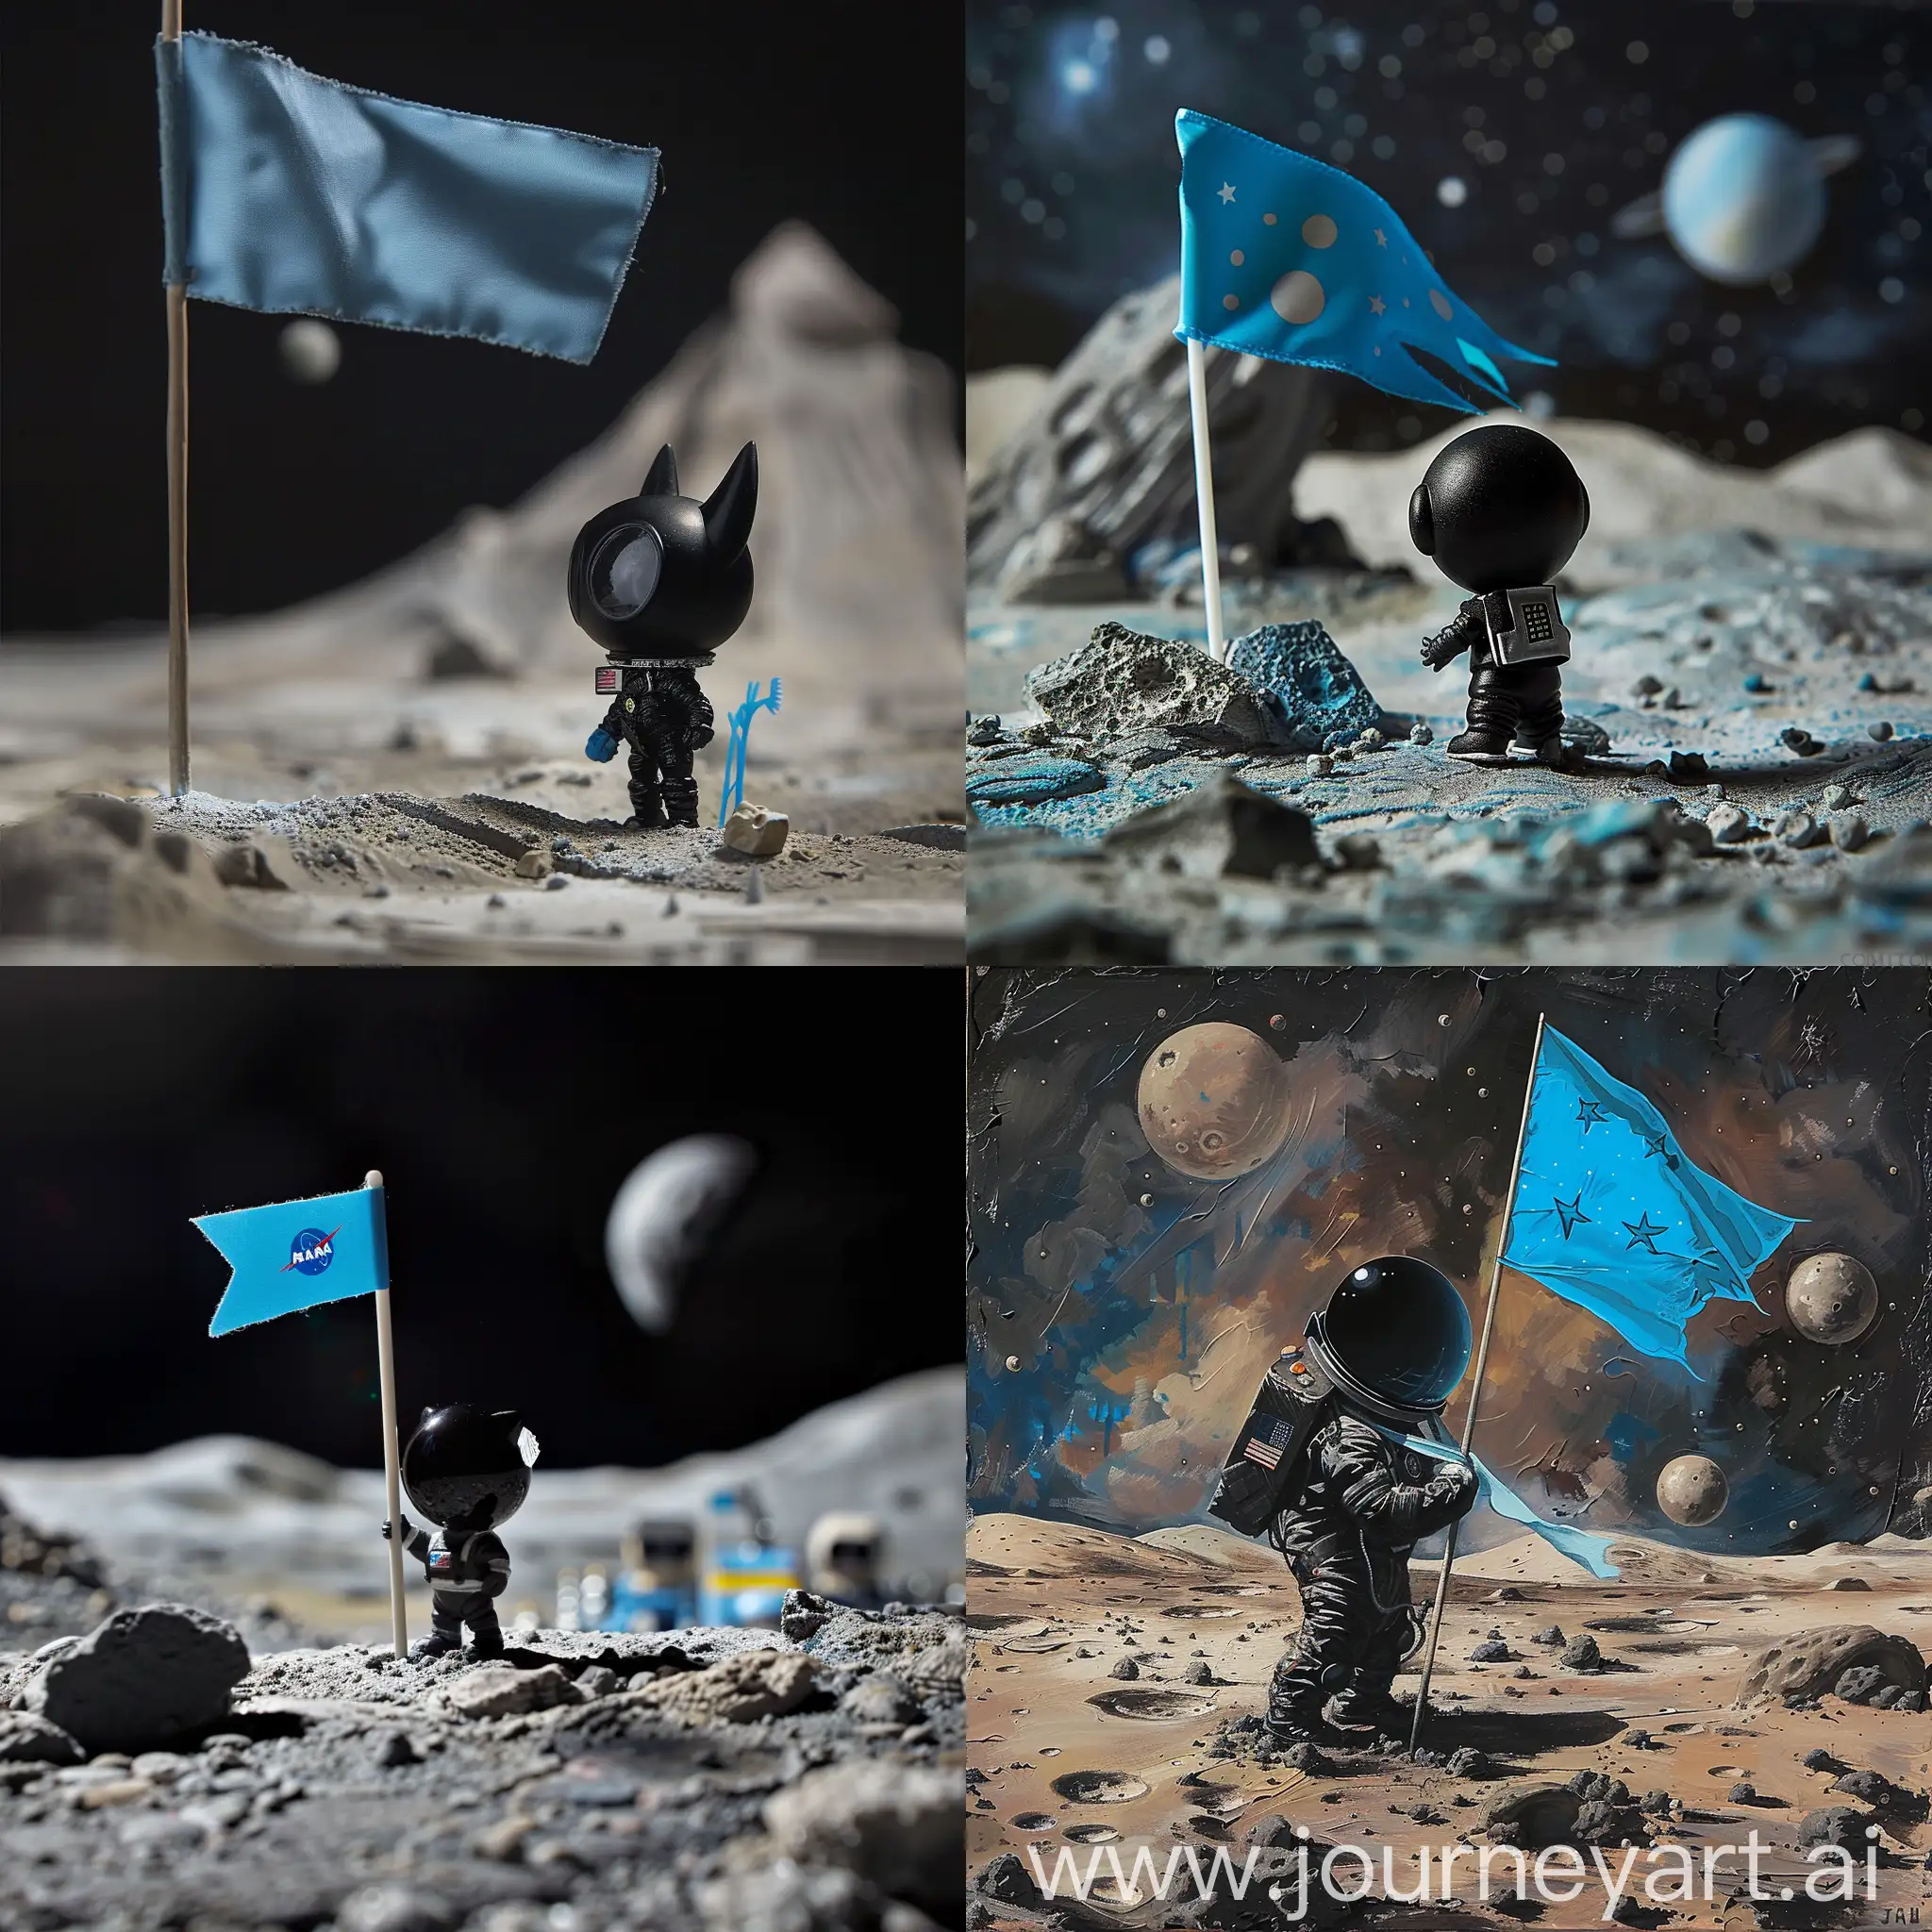 תוכי צבעוני הולך על הירח עם דגל כחול
